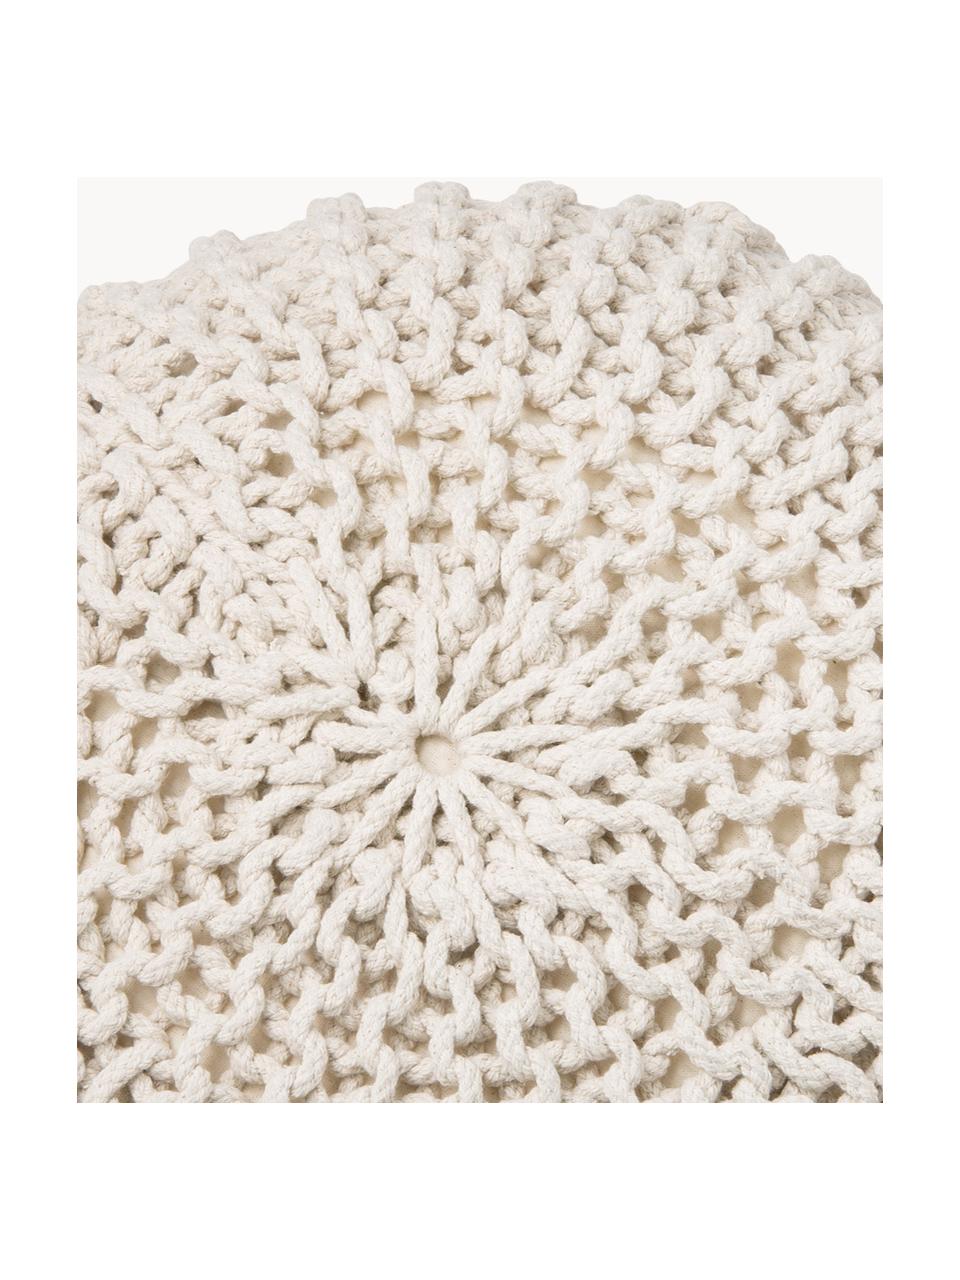 Handgefertigter Strickpouf Dori, Bezug: 100% Baumwolle, Cremeweiß, Ø 55 x H 35 cm